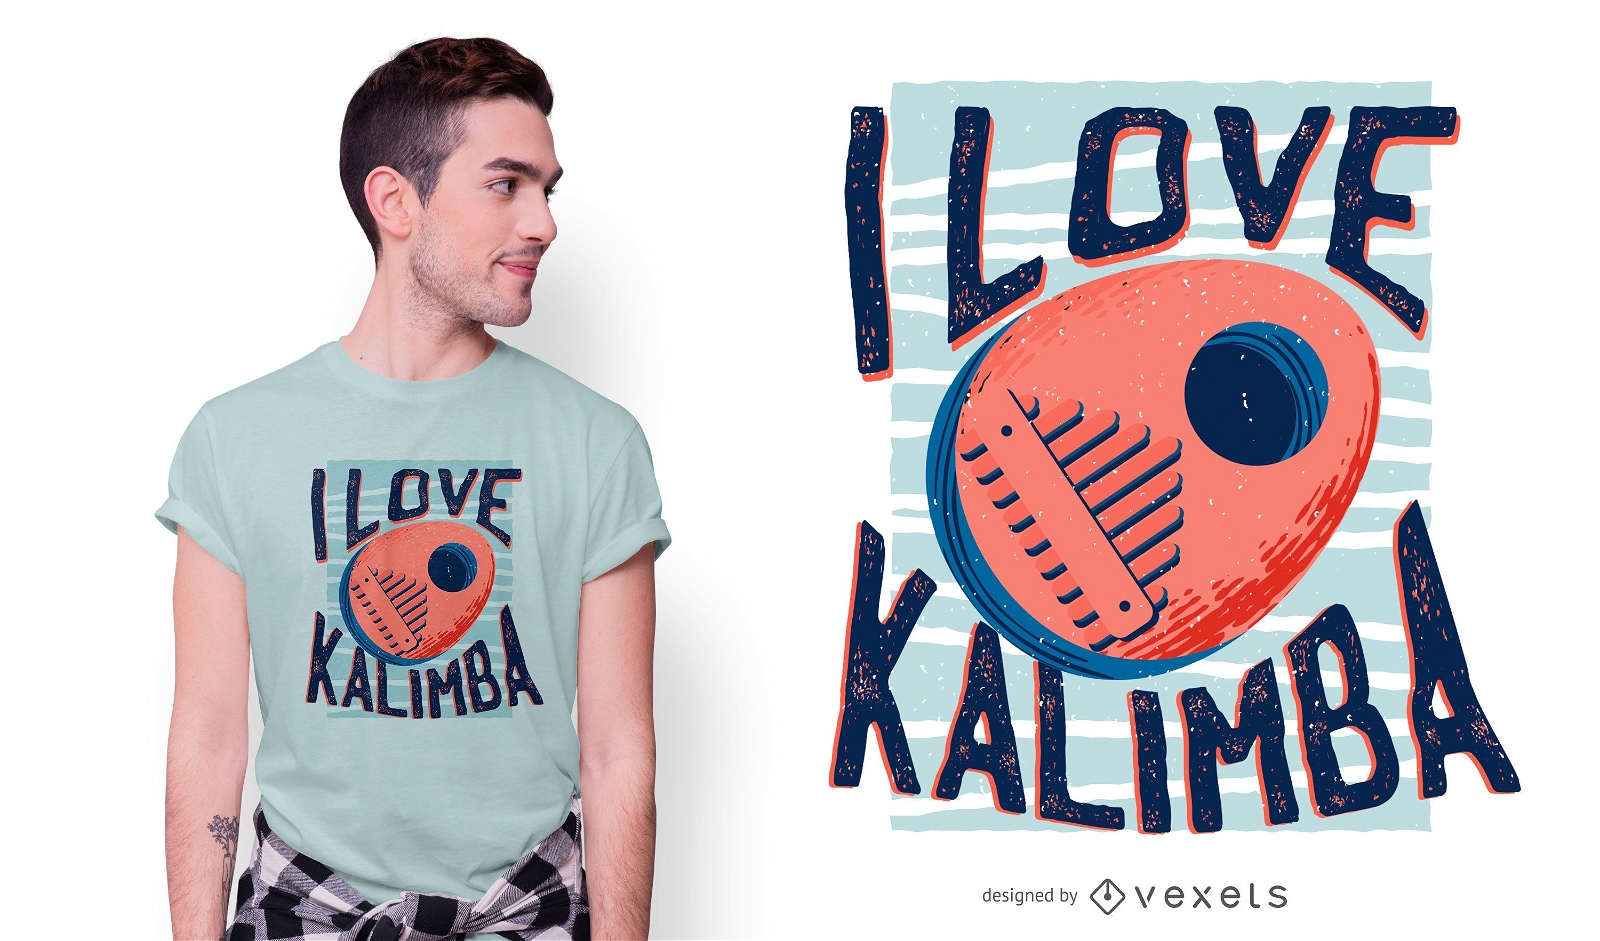 Adoro o design de camisetas Kalimba